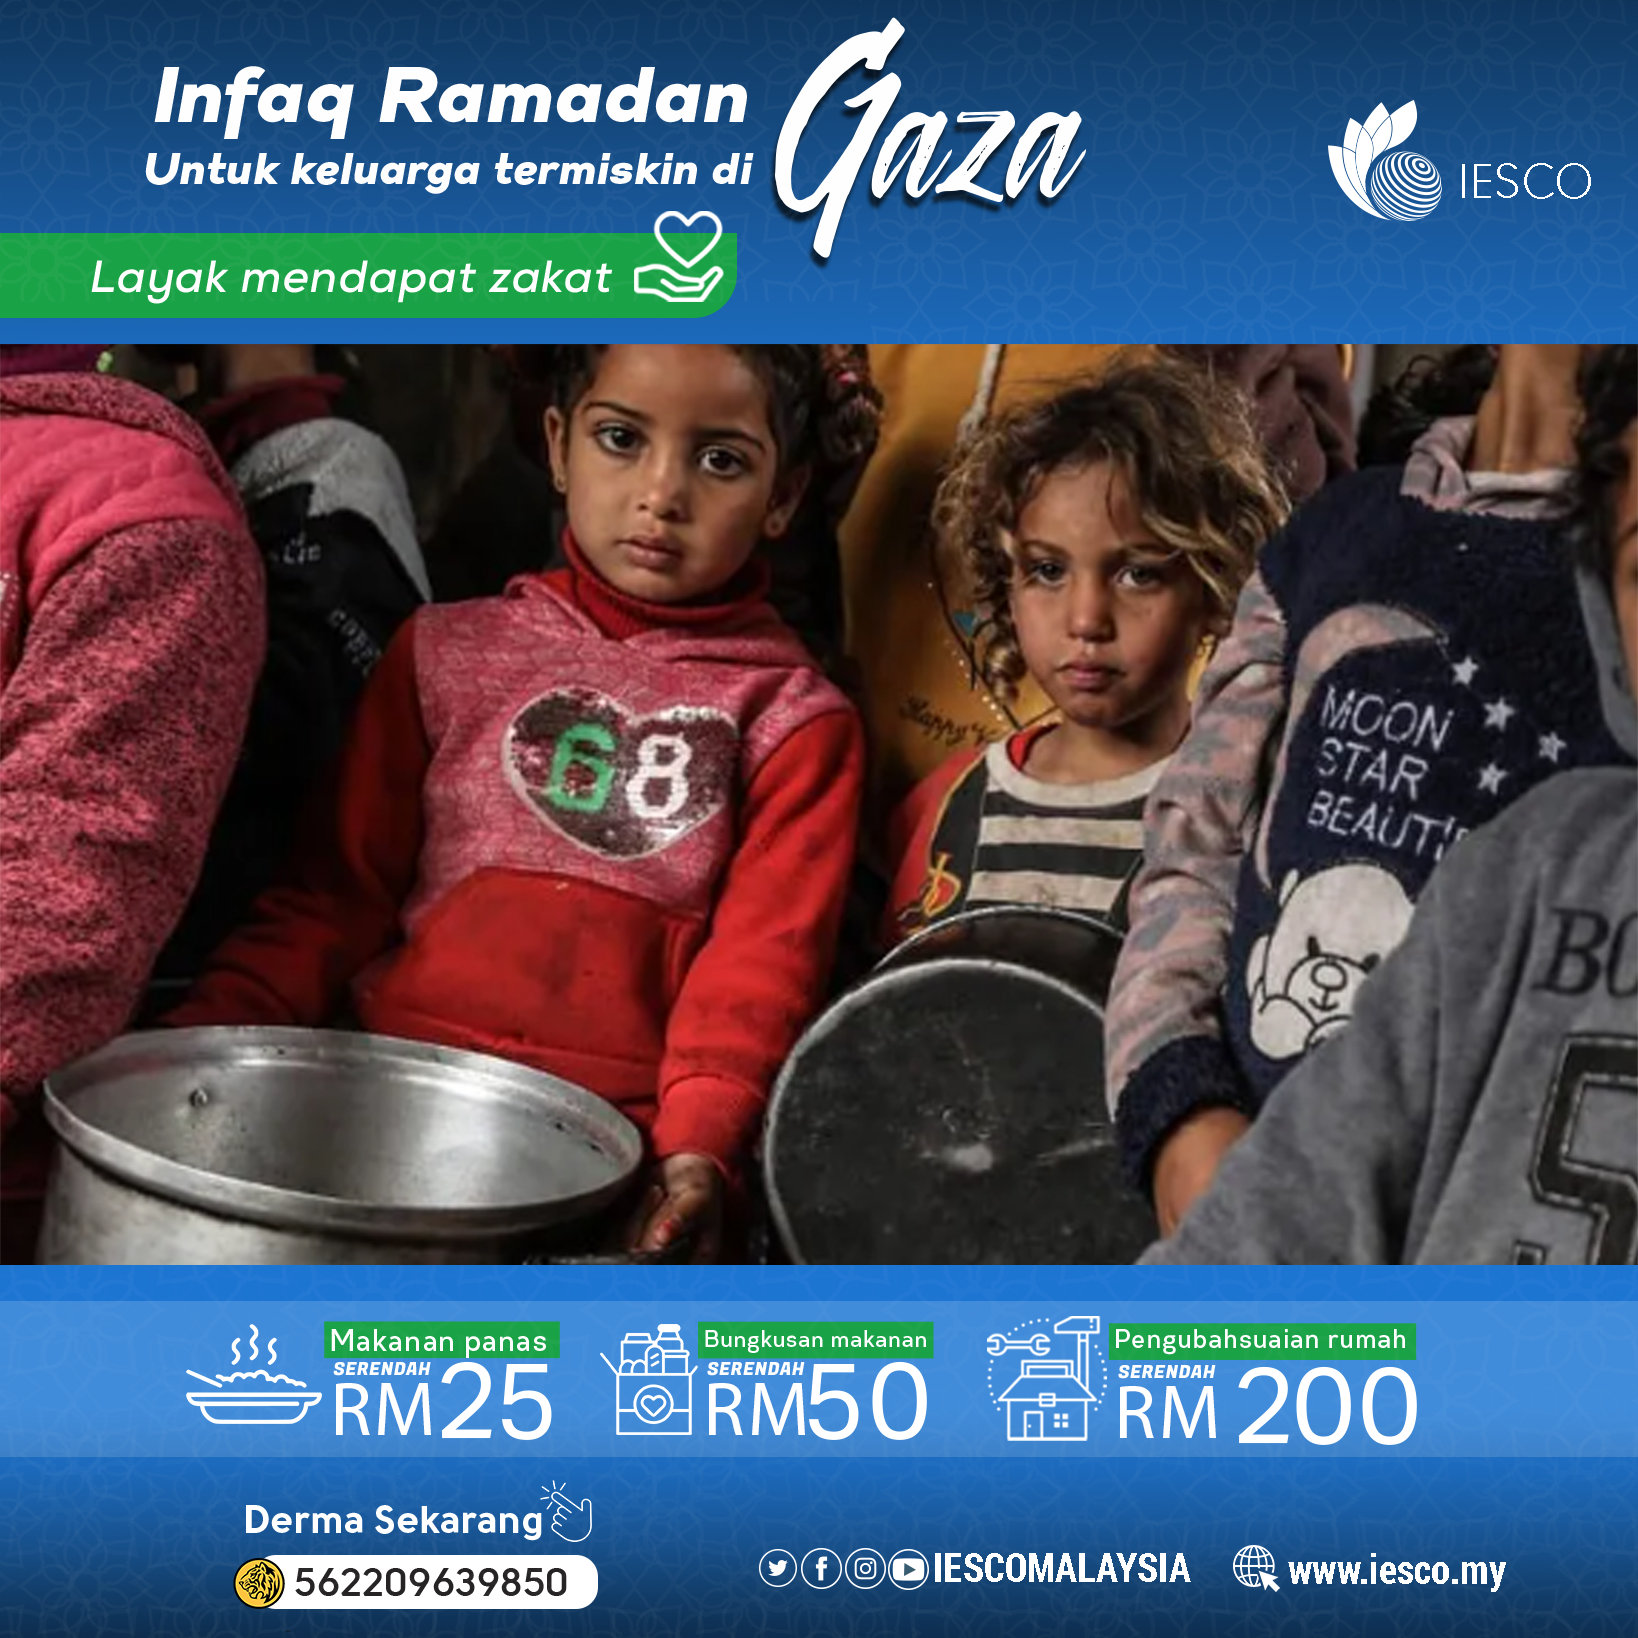 مشروع السلة الغذاية للعائلات الفقيرة في غزة